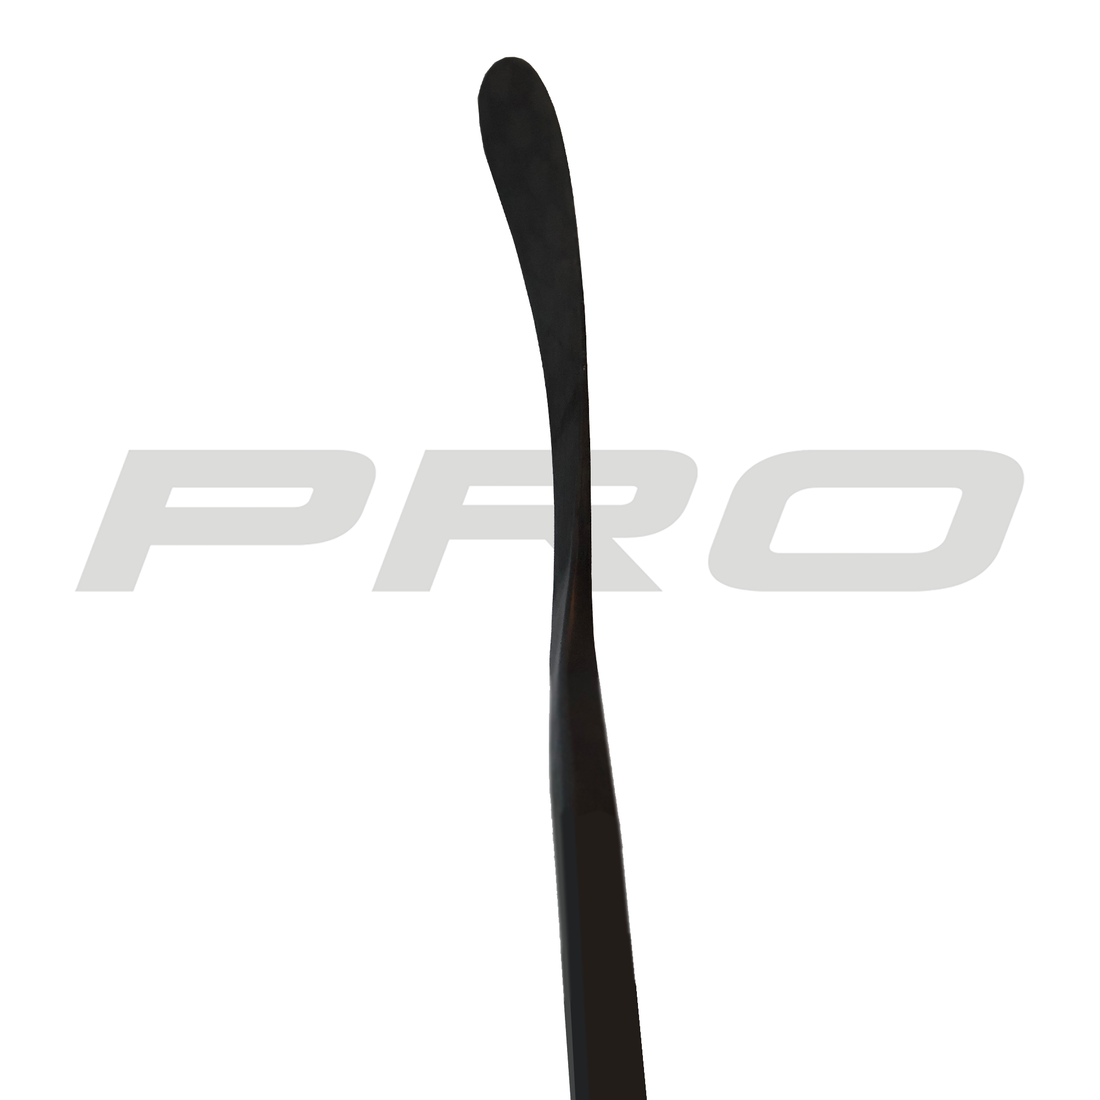 PRO8 (ST: Ovechkin Pro) - Red Line (375 G) - Pro Stock Hockey Stick - – Pro  Stock Hockey Sticks